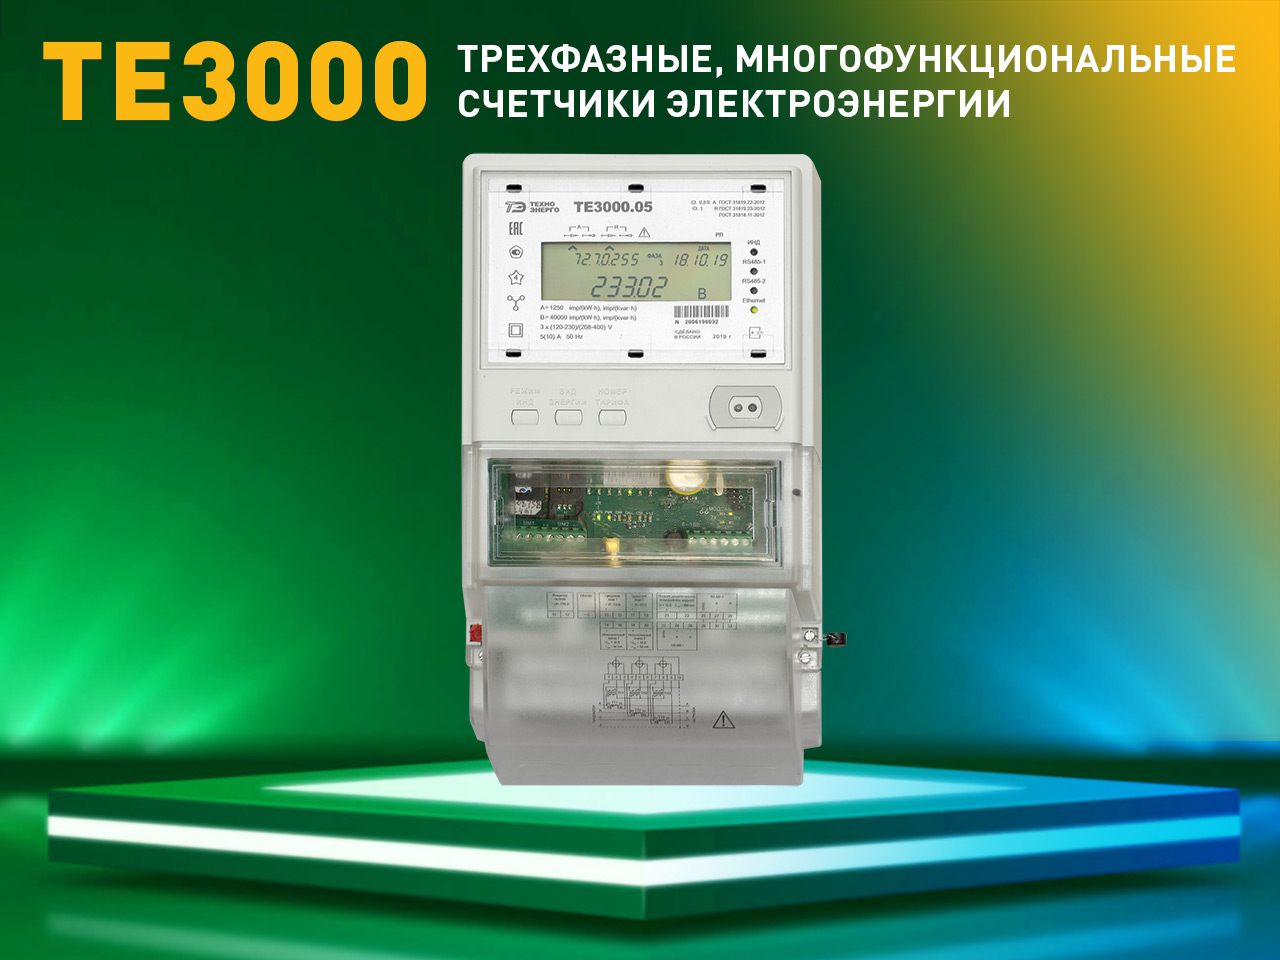 Счетчик электроэнергии ТЕ3000 внесен в перечень счетчиков для ОРЭМ